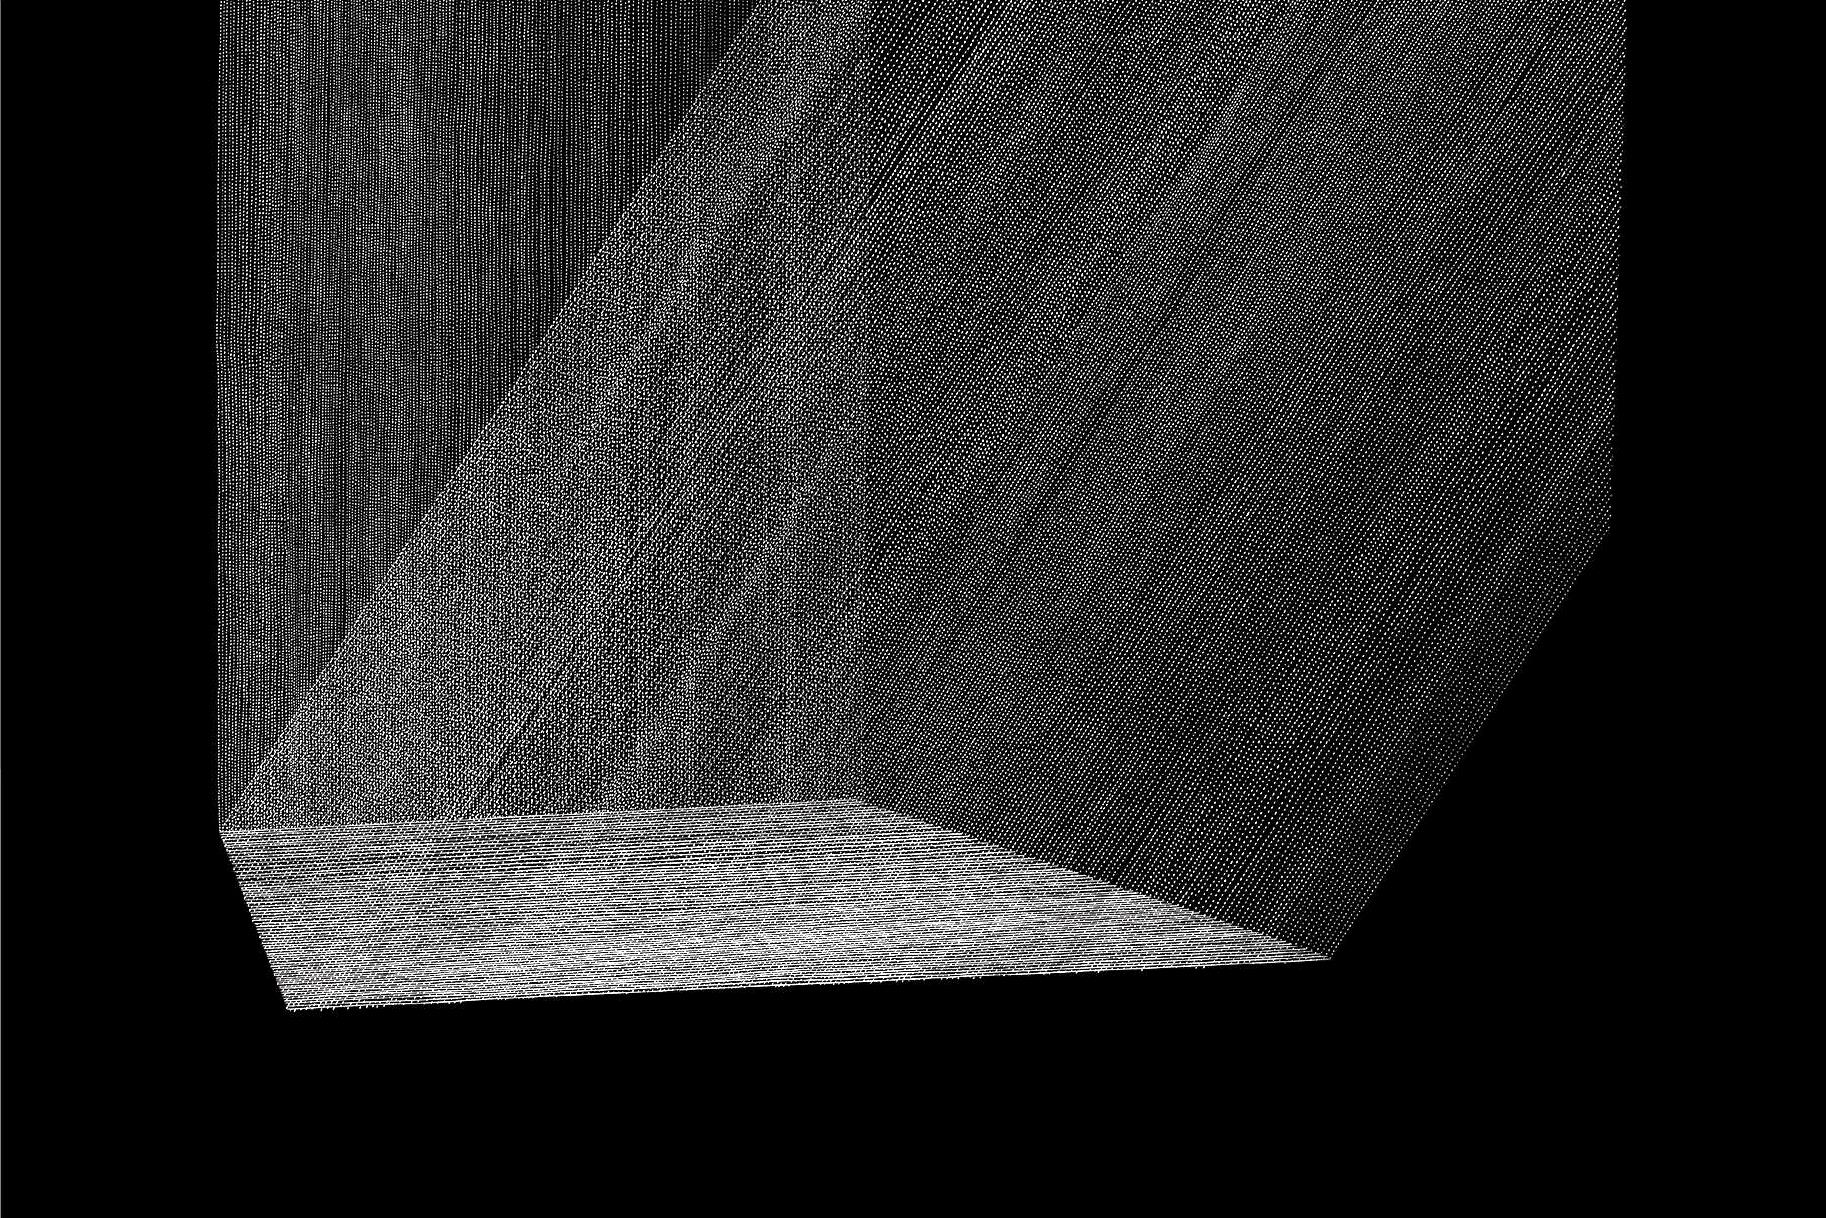 grafika | na czarnym tle układ cieniutkich białych linii (jak snop światła) biegnących pionowo i przecinających się pod kątem 40 st., tworzących biały prostokąt